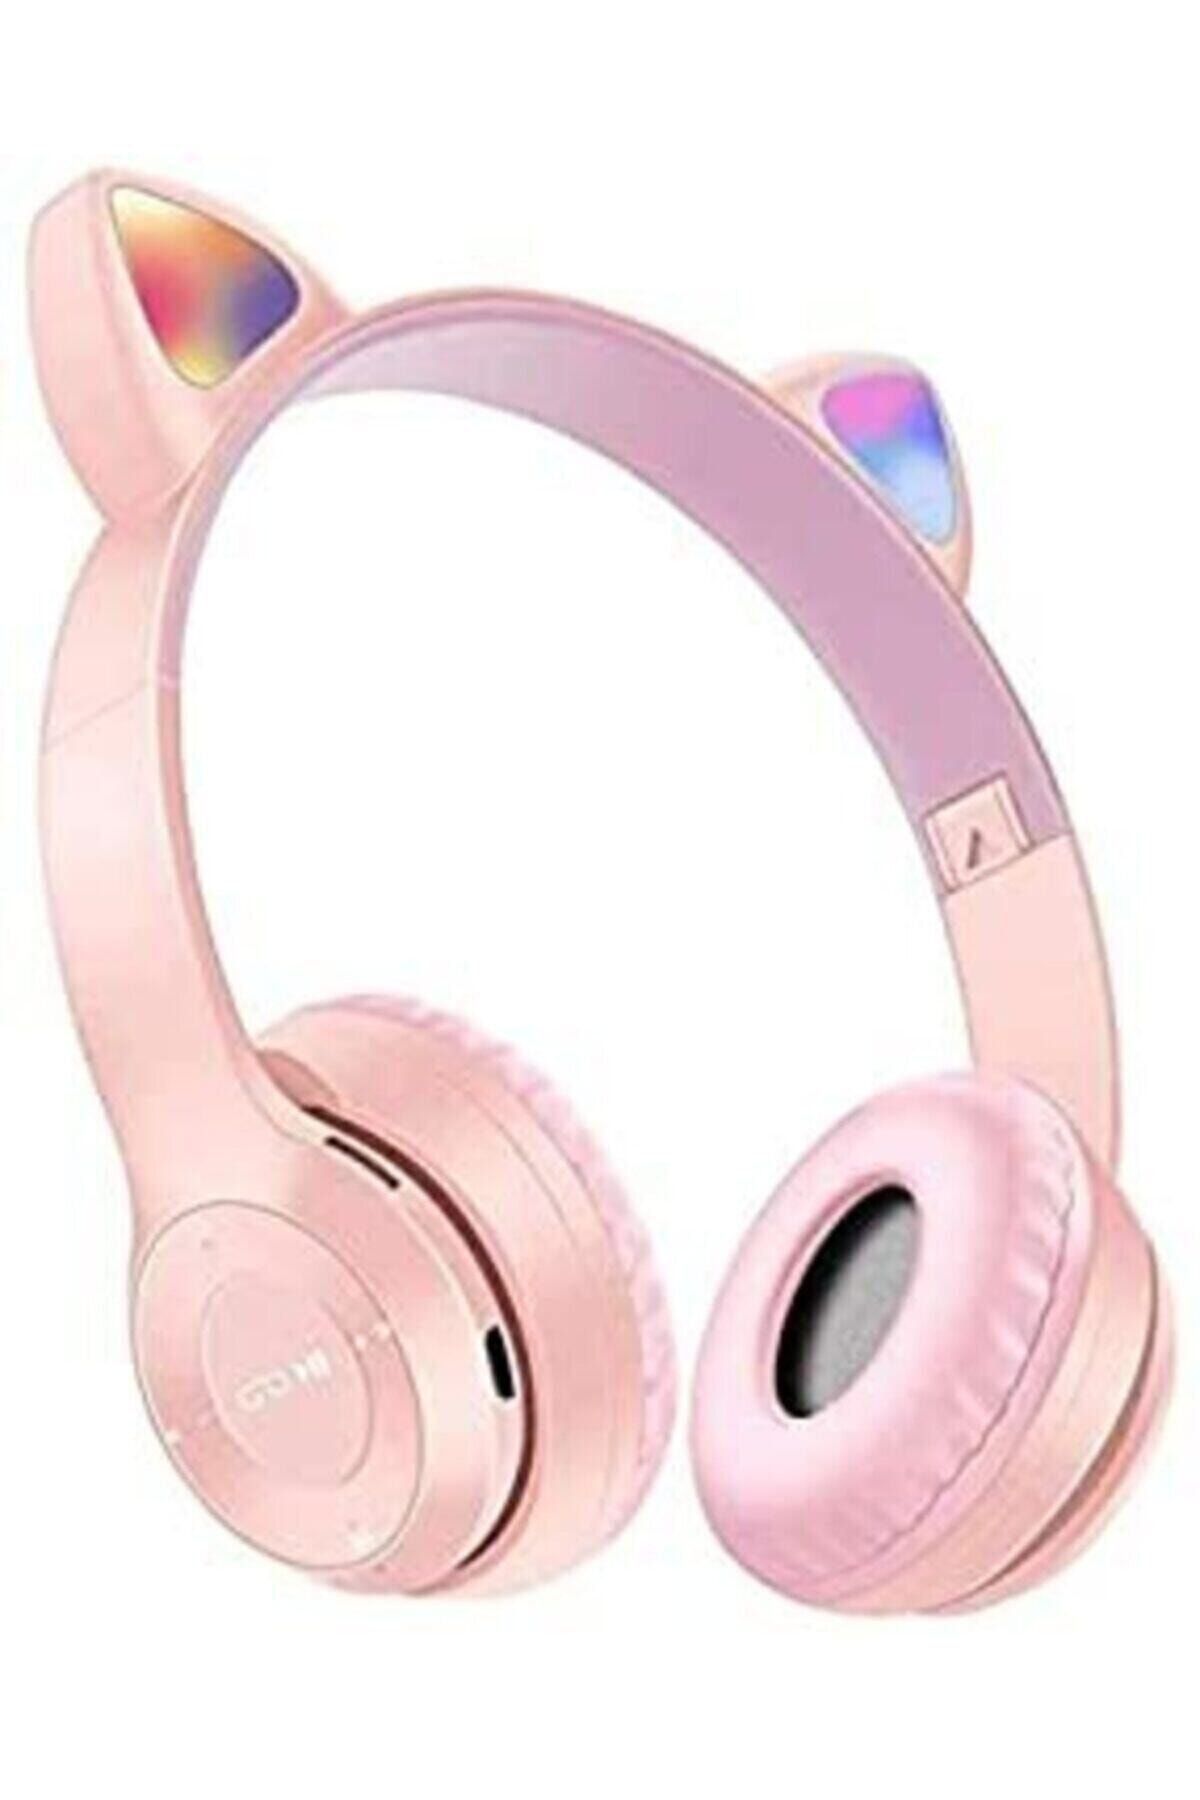 Anyplus P47m Işıklı Bluetooth Kulaklık 5.0 Kablosuz Katlanabilir Kedili Kulaklık Parti Işıklı Kulaklık Pembe